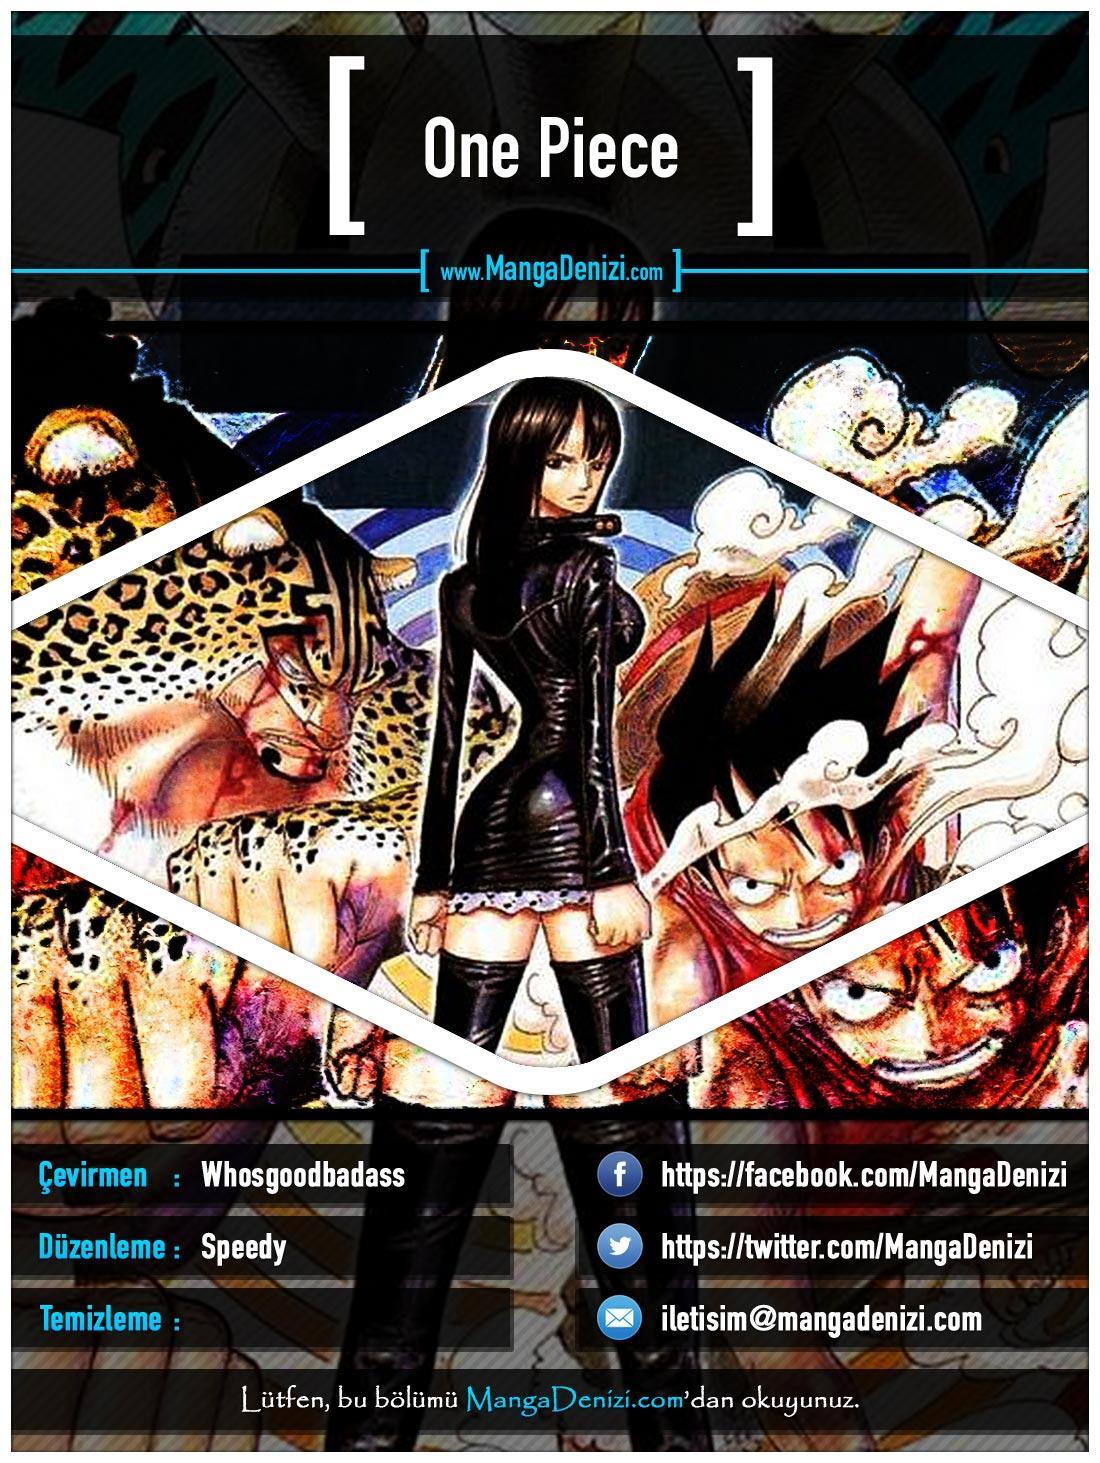 One Piece [Renkli] mangasının 0436 bölümünün 1. sayfasını okuyorsunuz.